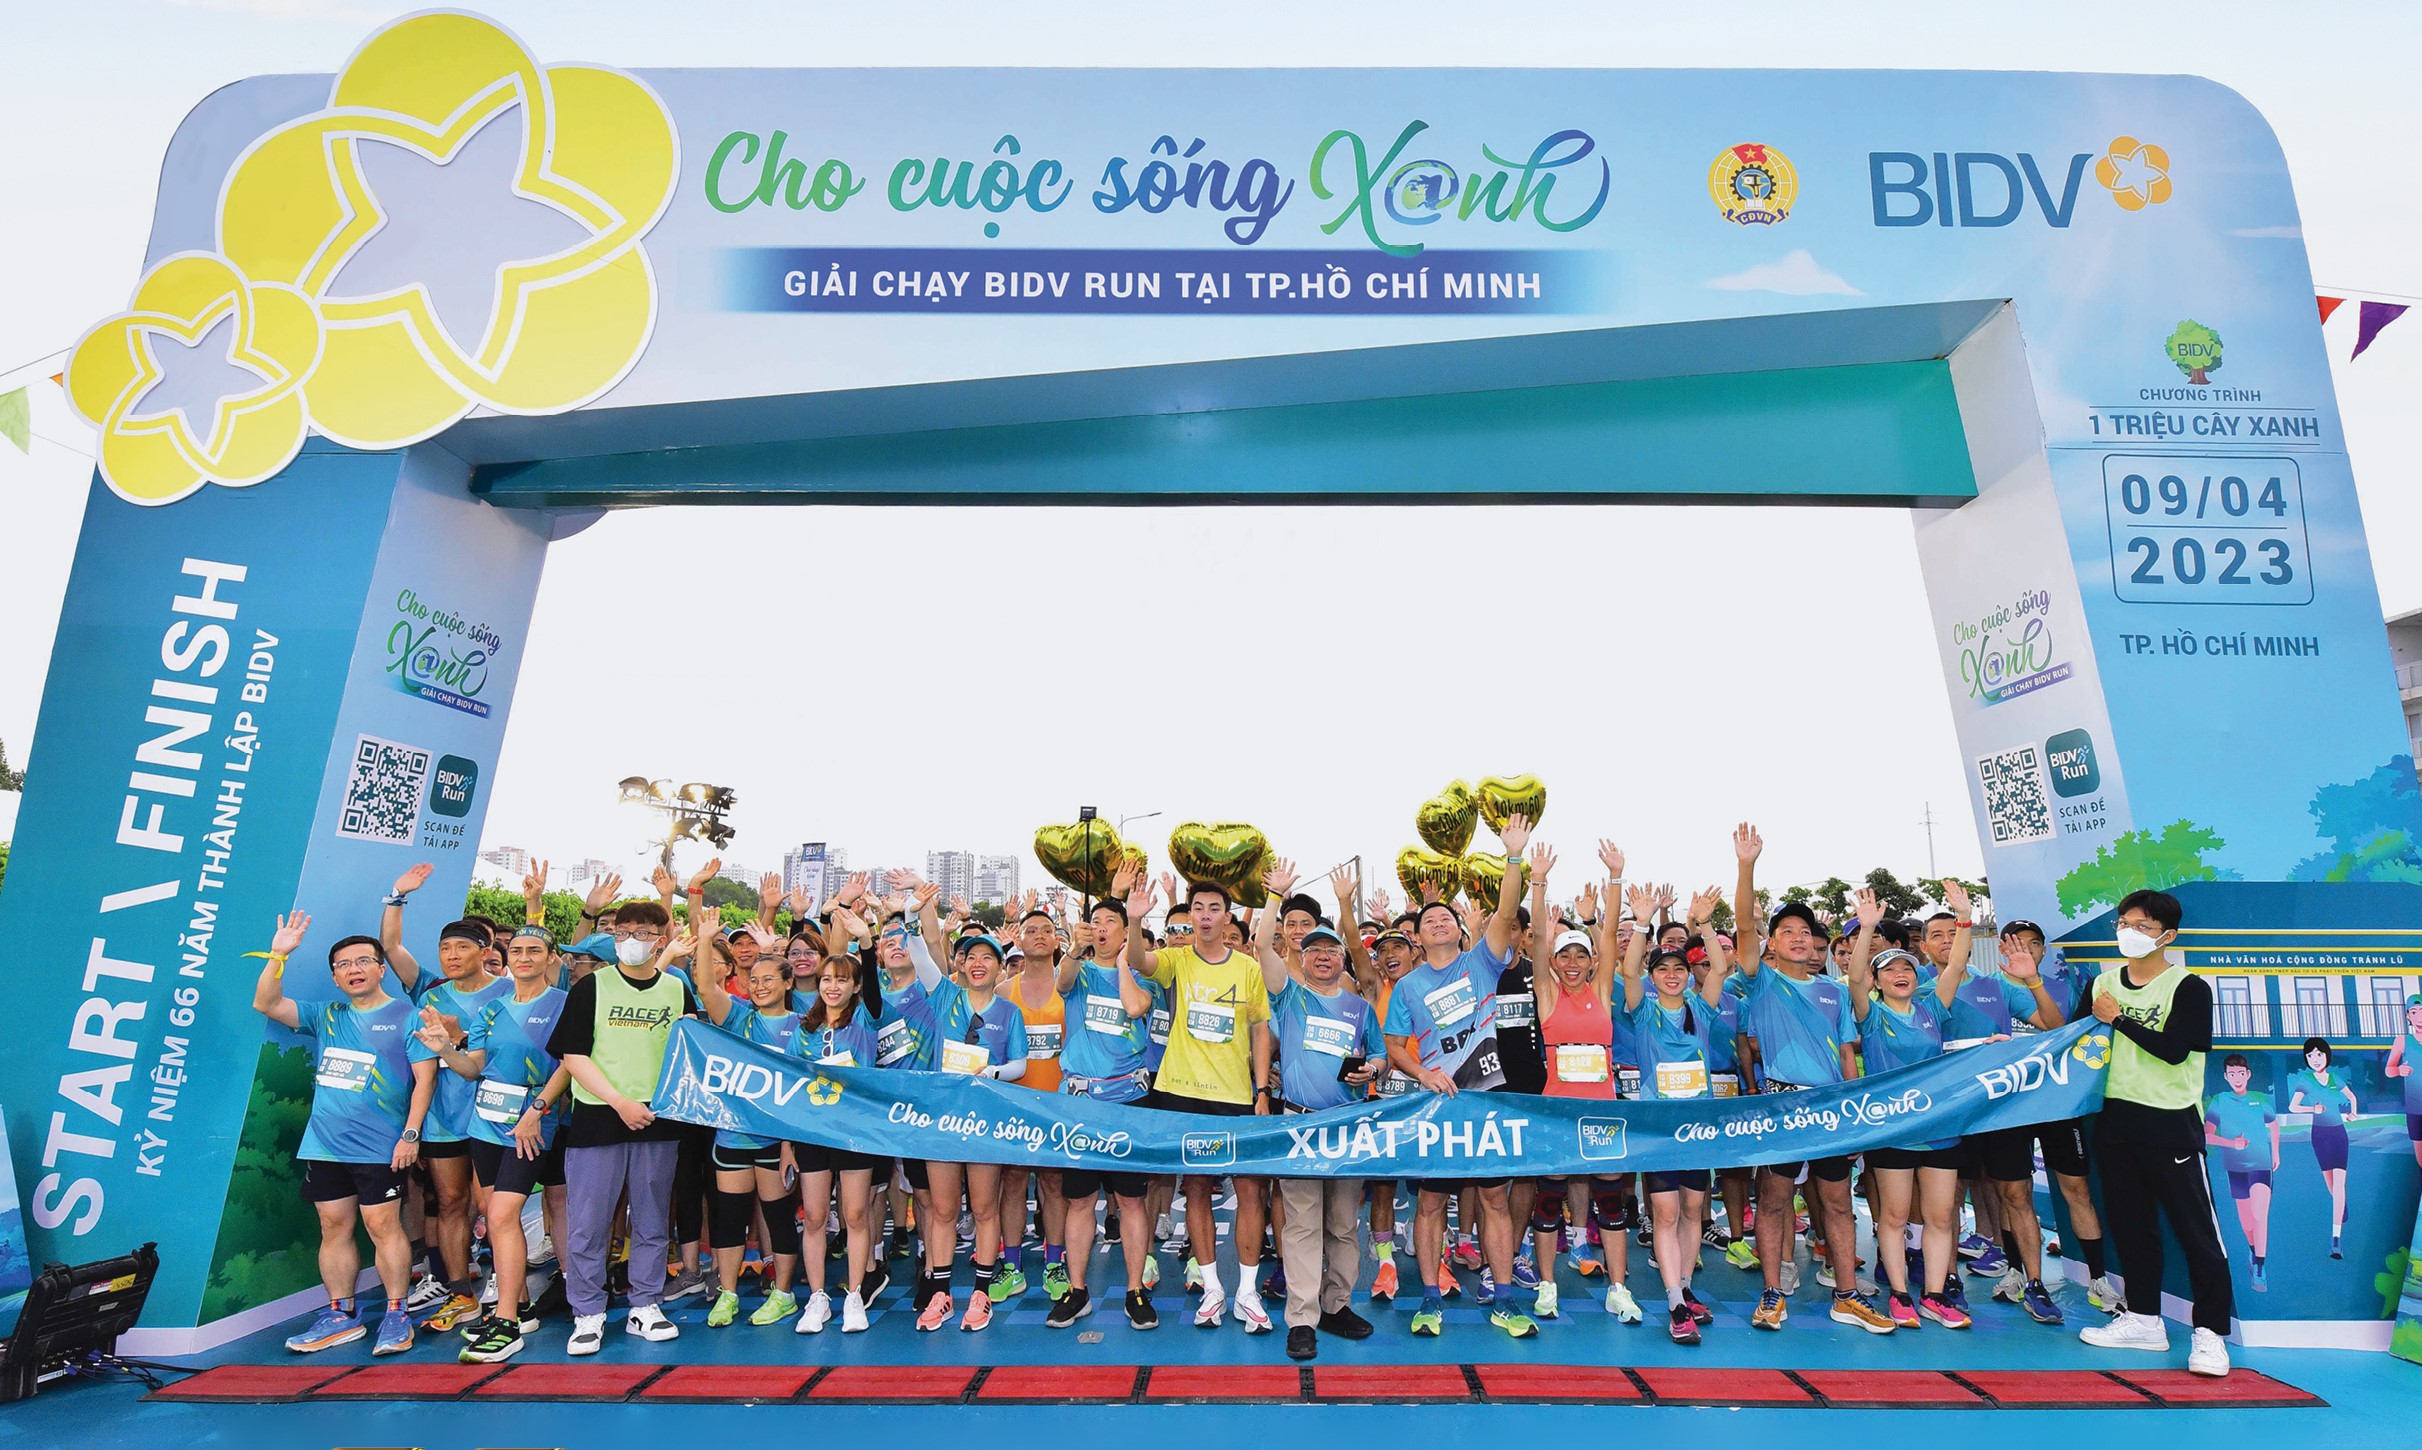 Giải chạy BIDV Run - Cho cuộc sống xanh năm 2023.